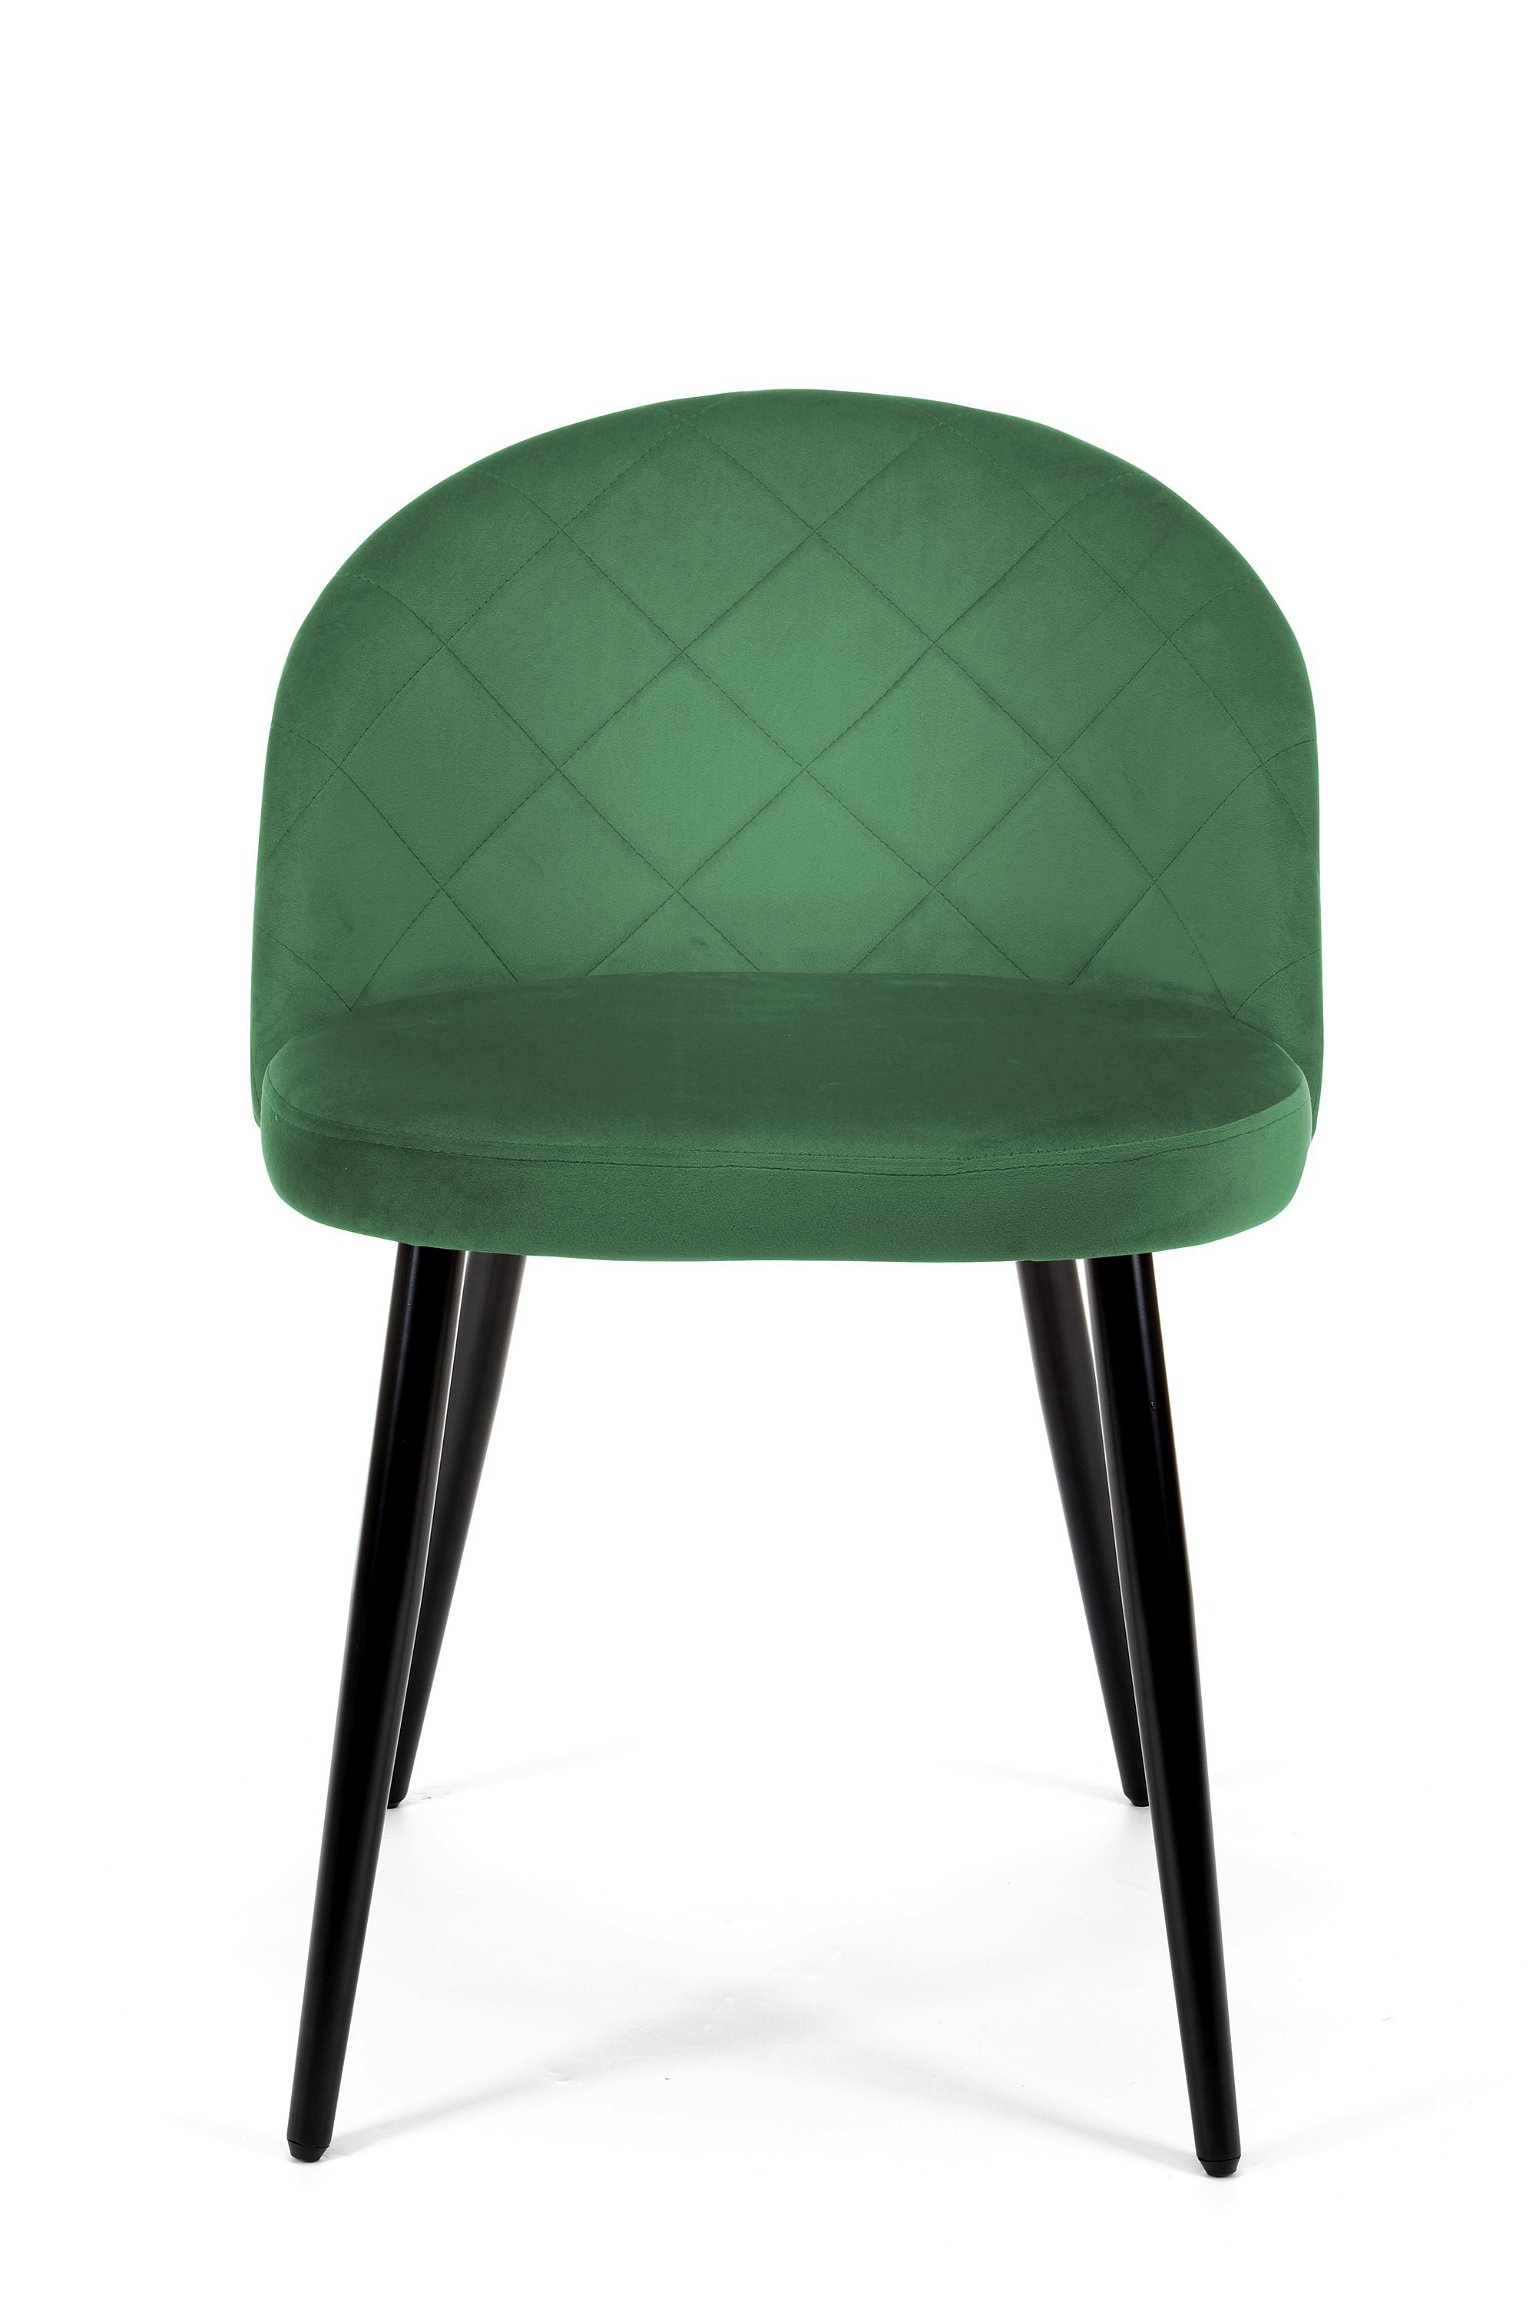 4-ių kėdžių komplektas SJ.077, žalia - 7